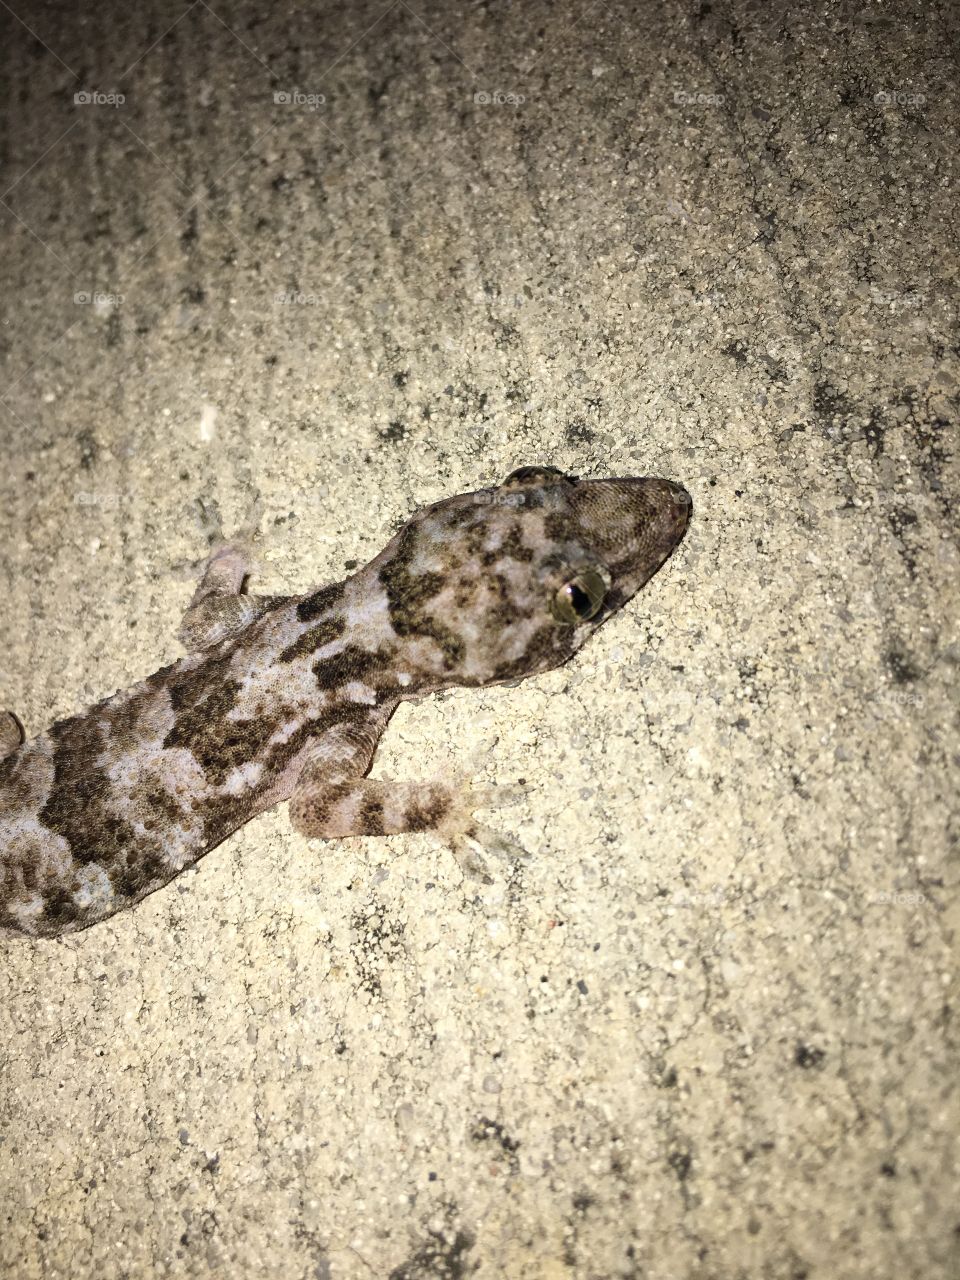 Gecko on the sidewalk 